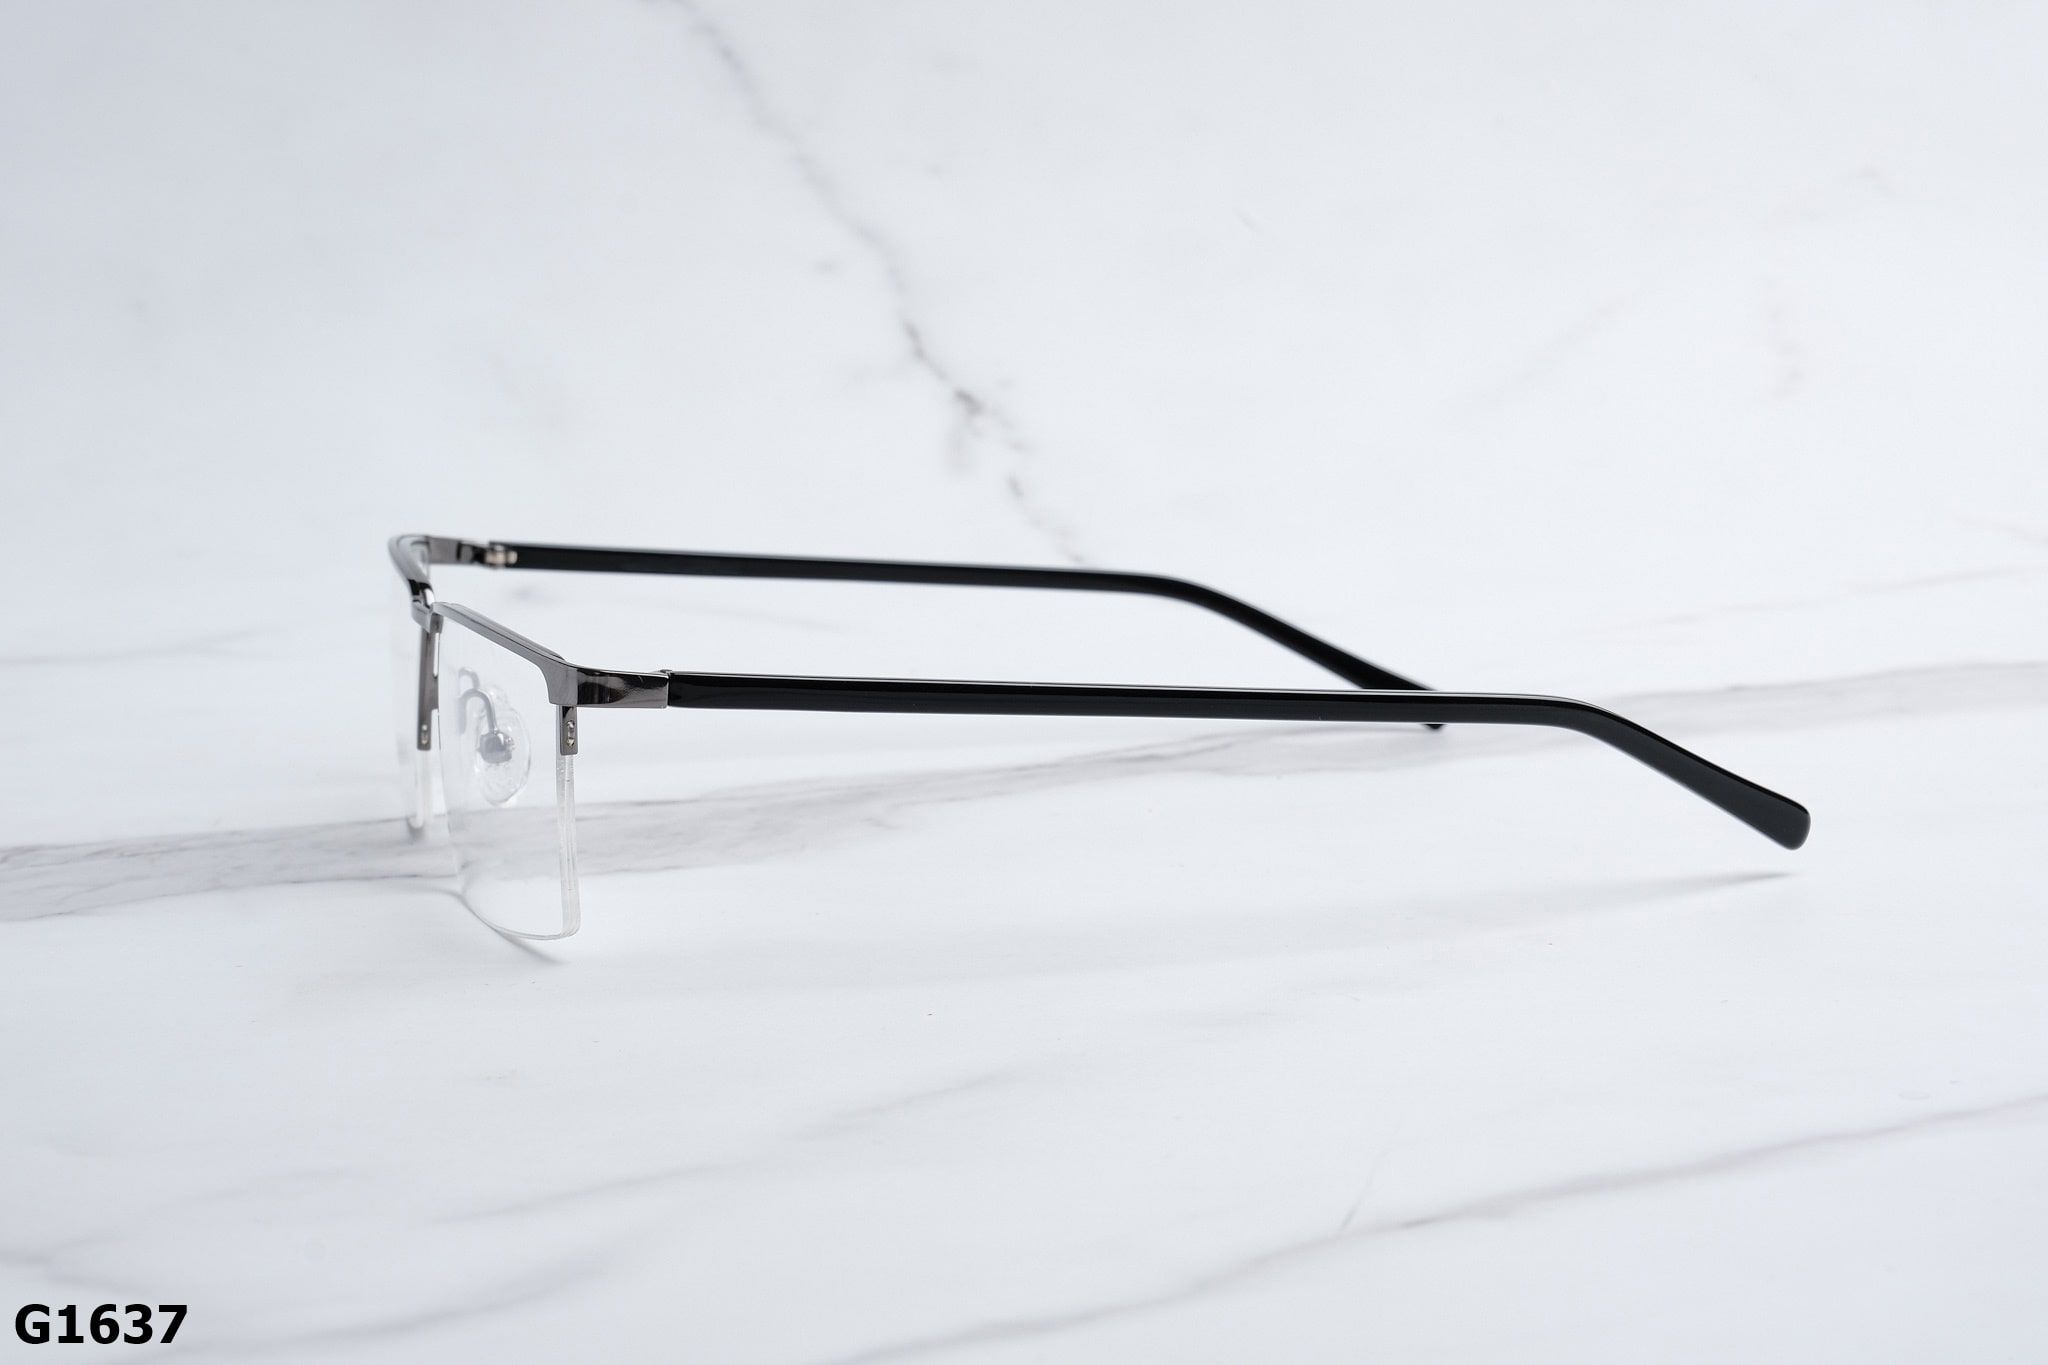  Rex-ton Eyewear - Glasses - G1637 